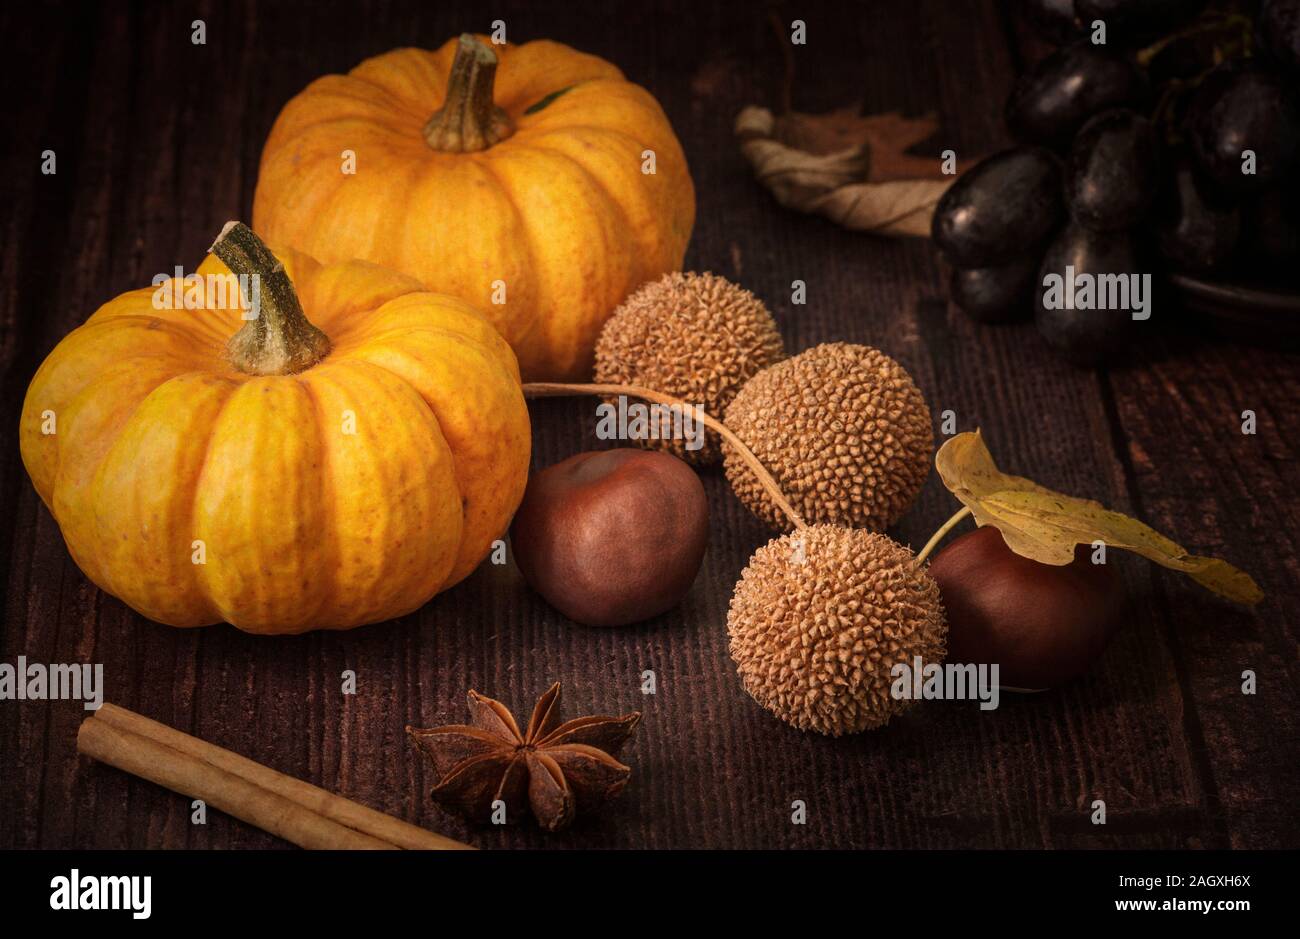 Autumn still life with munchkin pumpkins Stock Photo